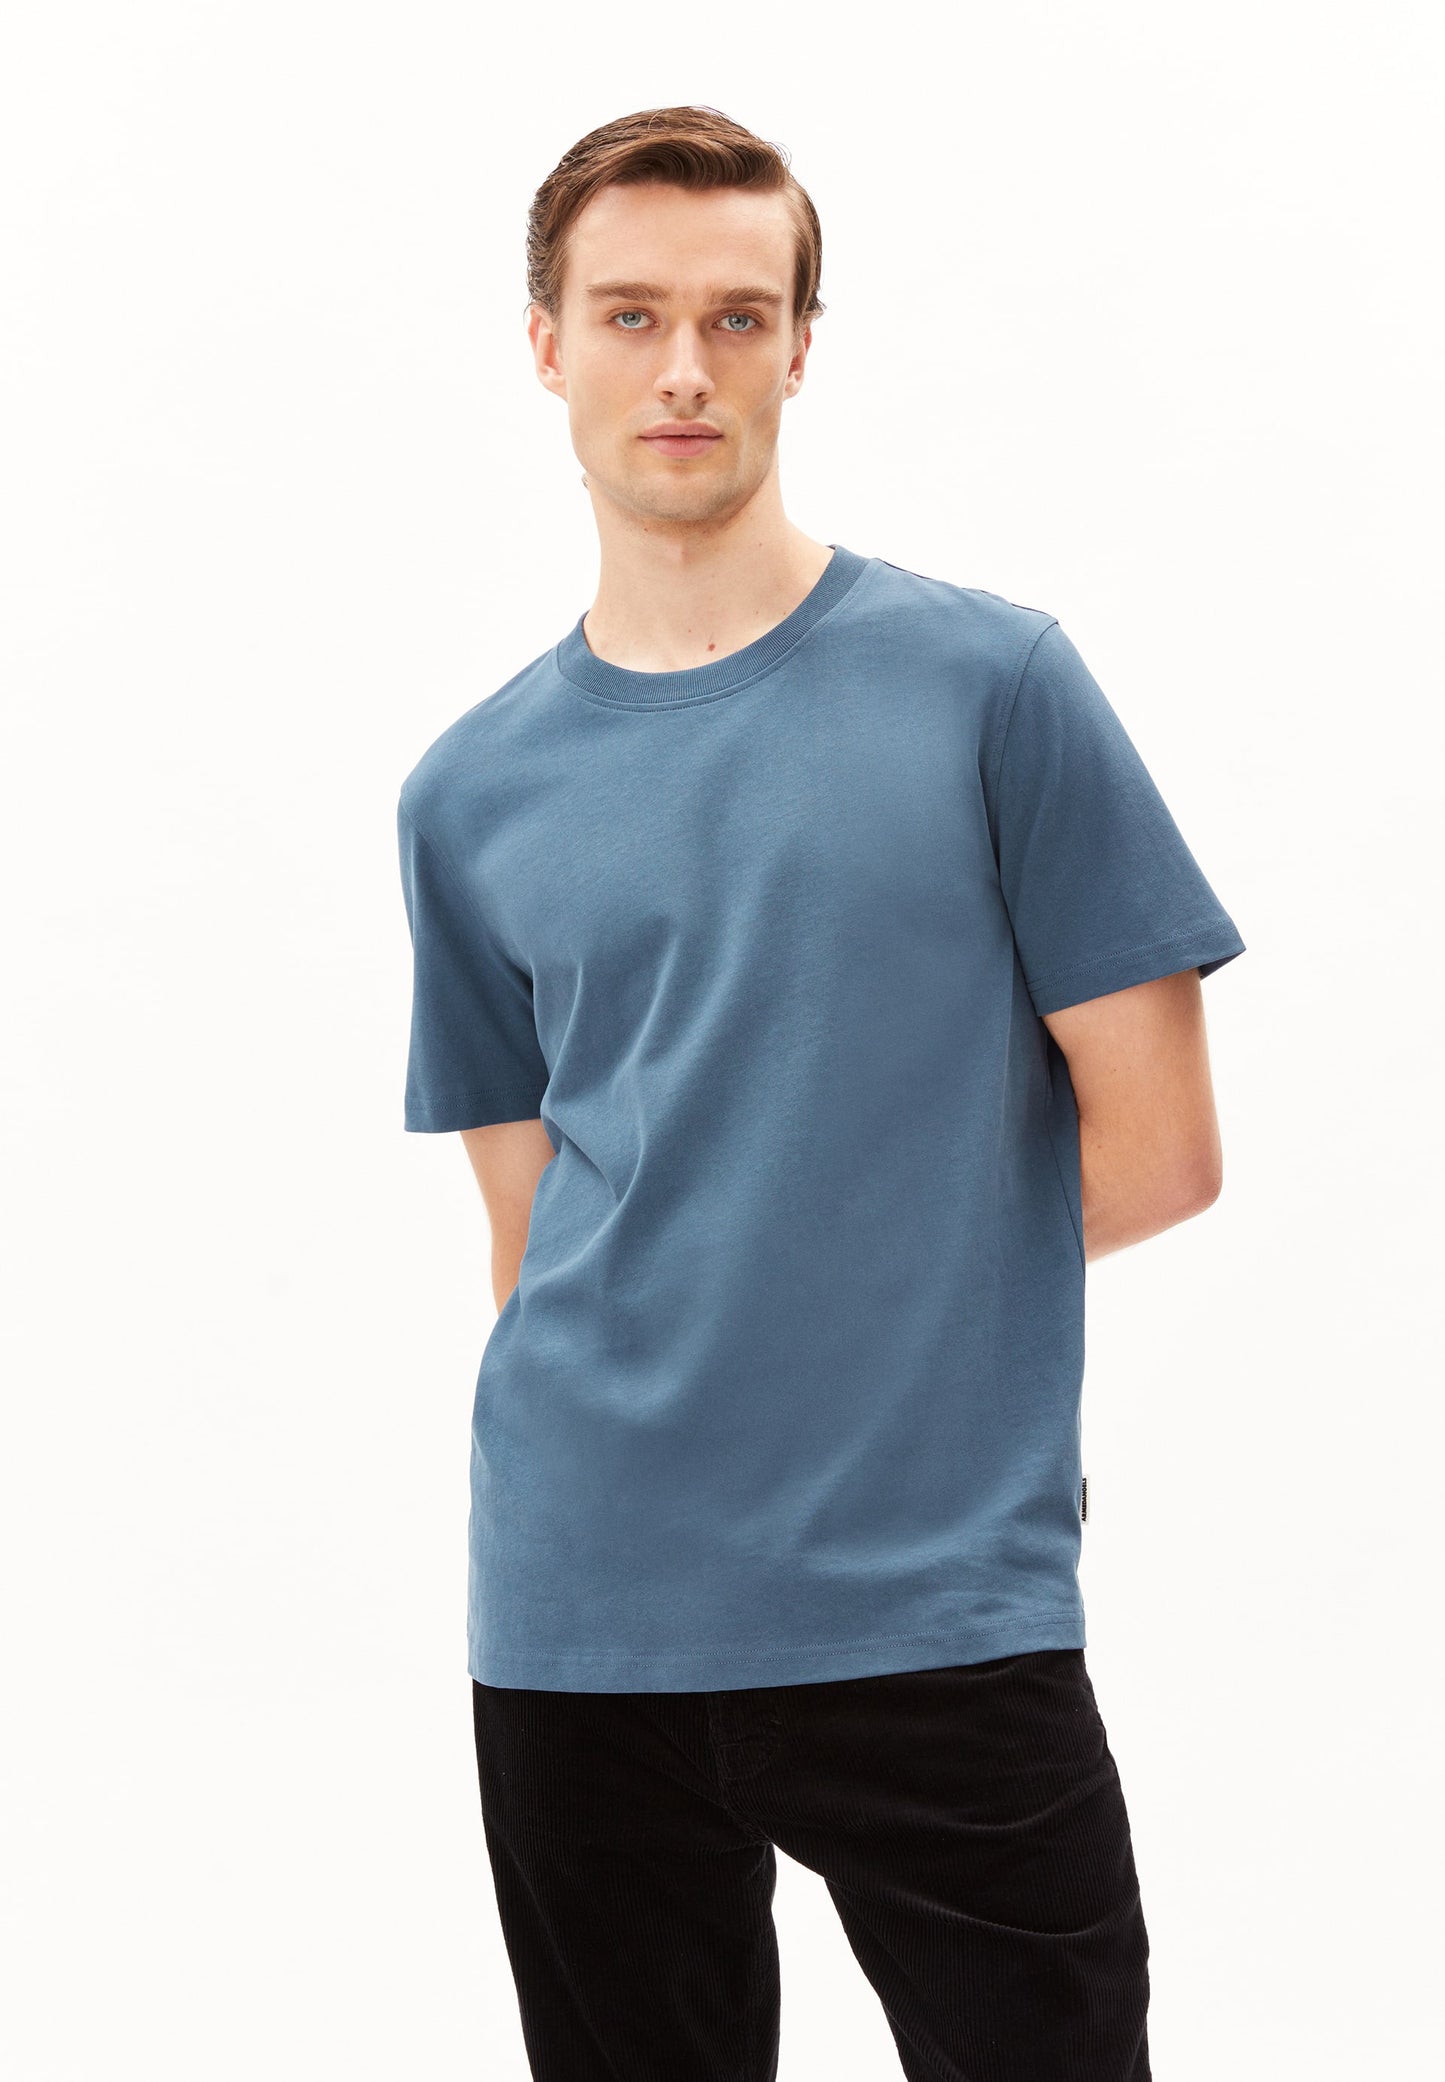 
                  
                    MAARKOS Iron Blue T-Shirt
                  
                